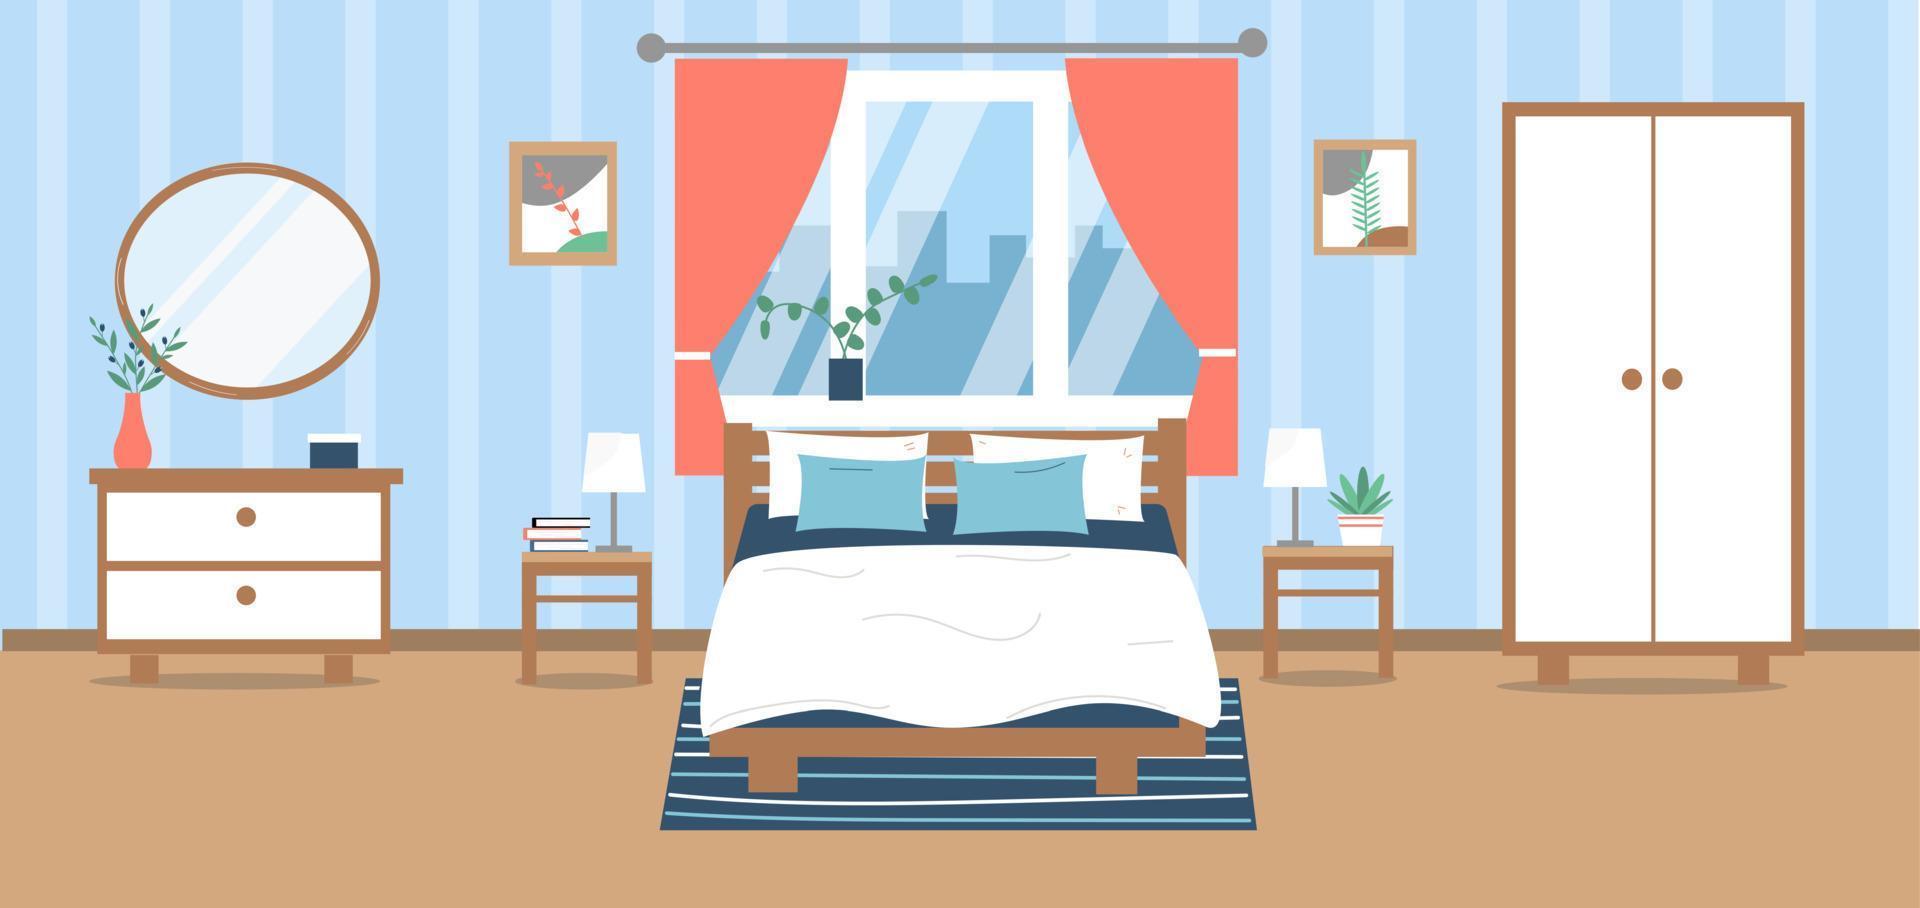 interior de dormitorio moderno. cama, armario, guardarropa, plantas, cuadros, decoración. ilustración vectorial en estilo plano. vector